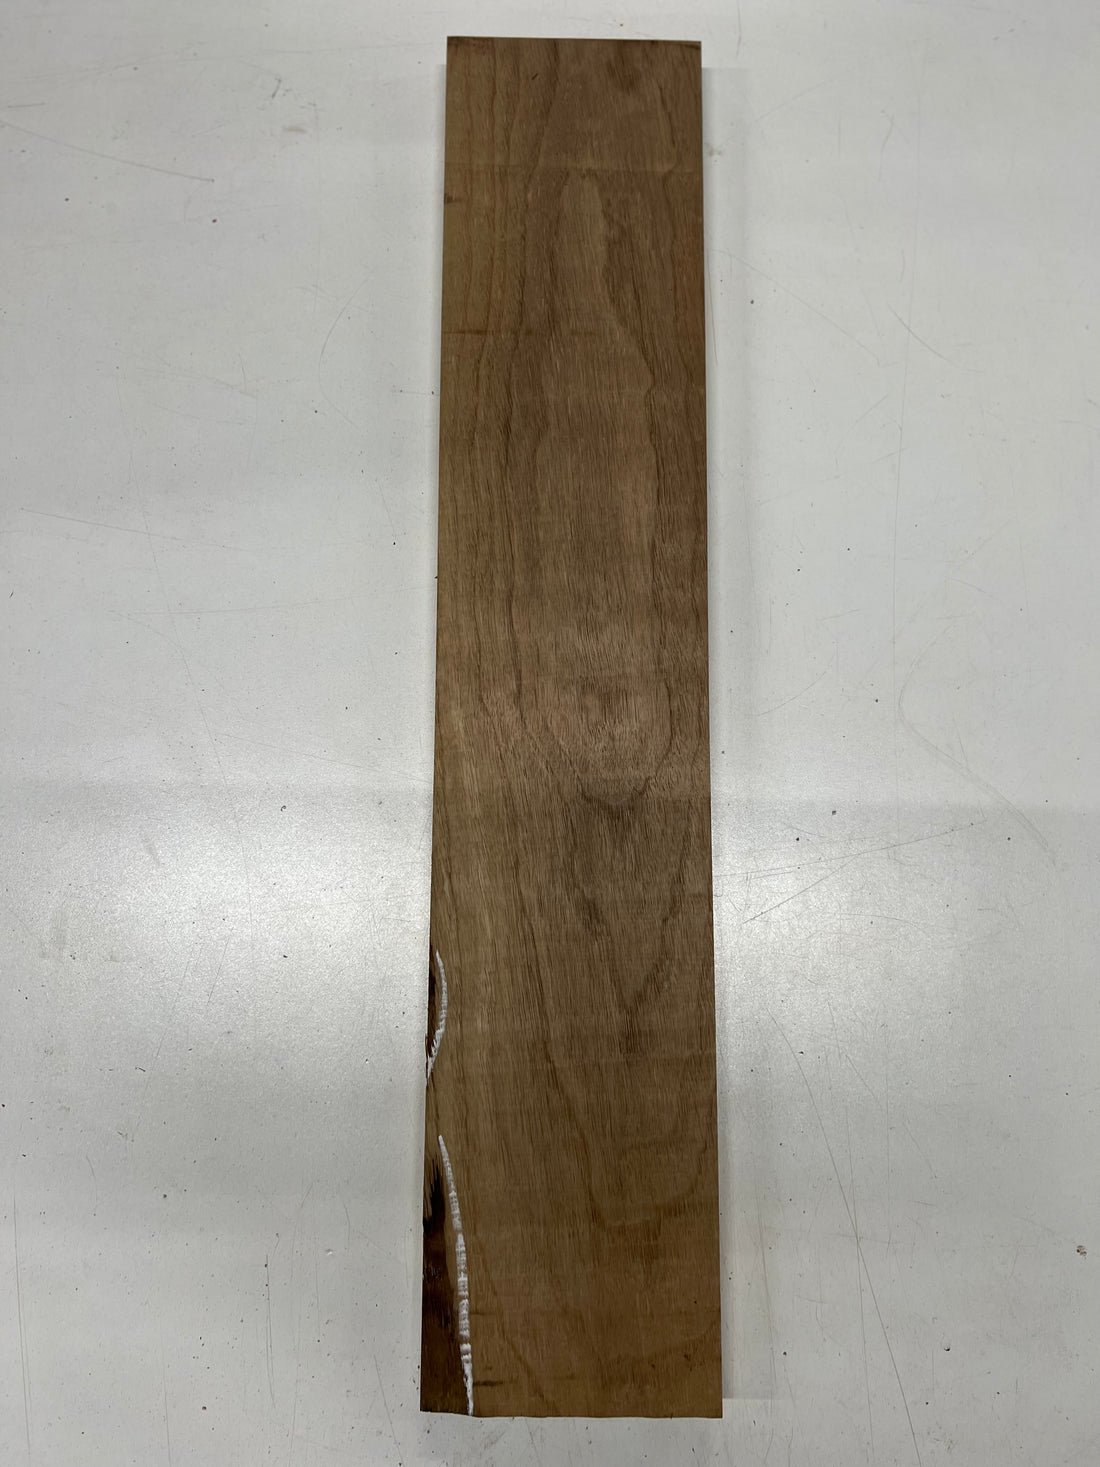 Black Walnut Lumber Board Wood Blank 25&quot;x 5&quot;x 3/4&quot; 